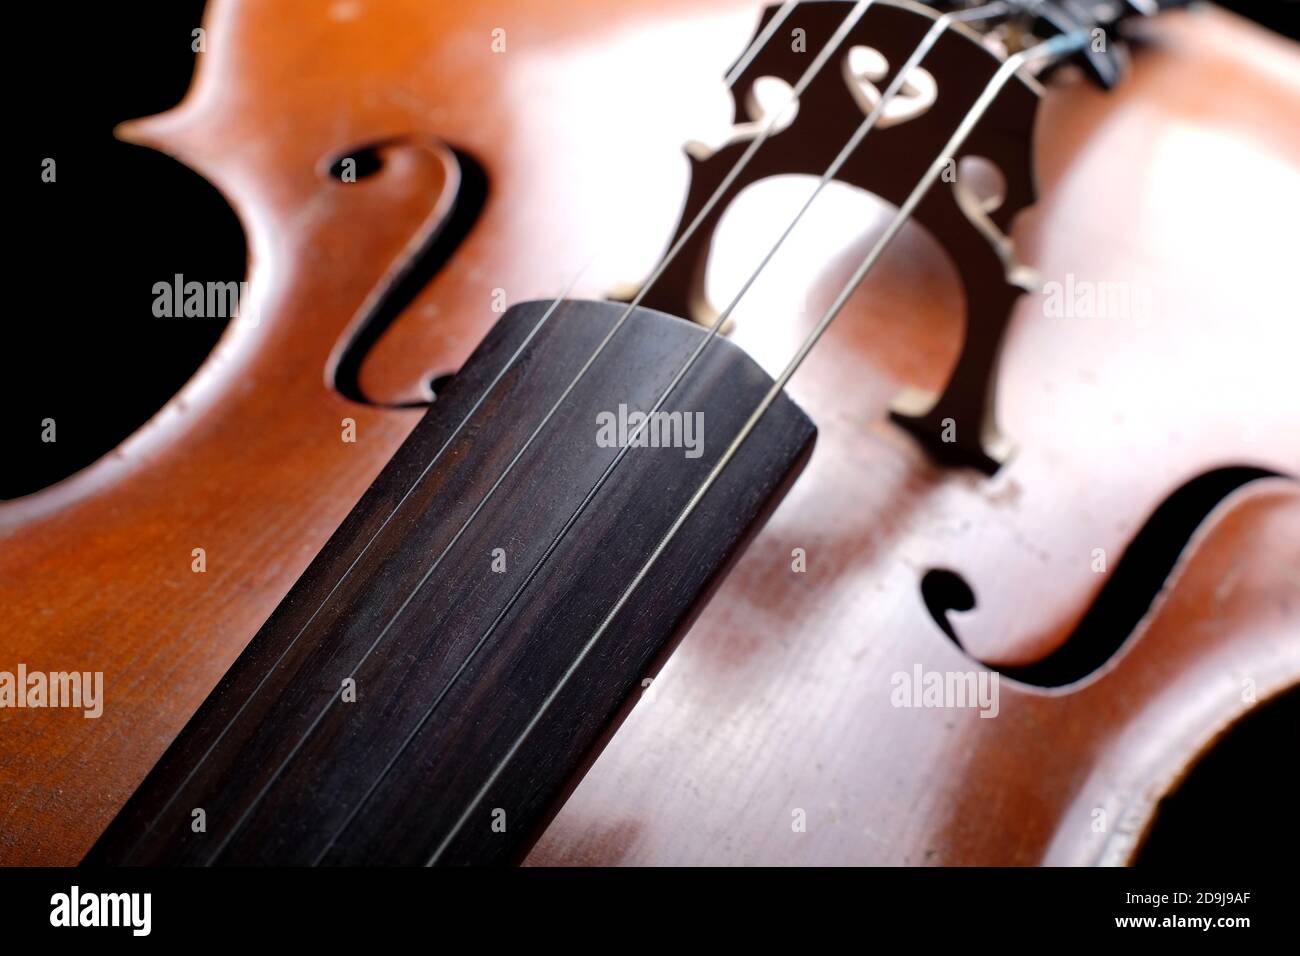 Vintage cello on a dark background. Cello details. Stock Photo